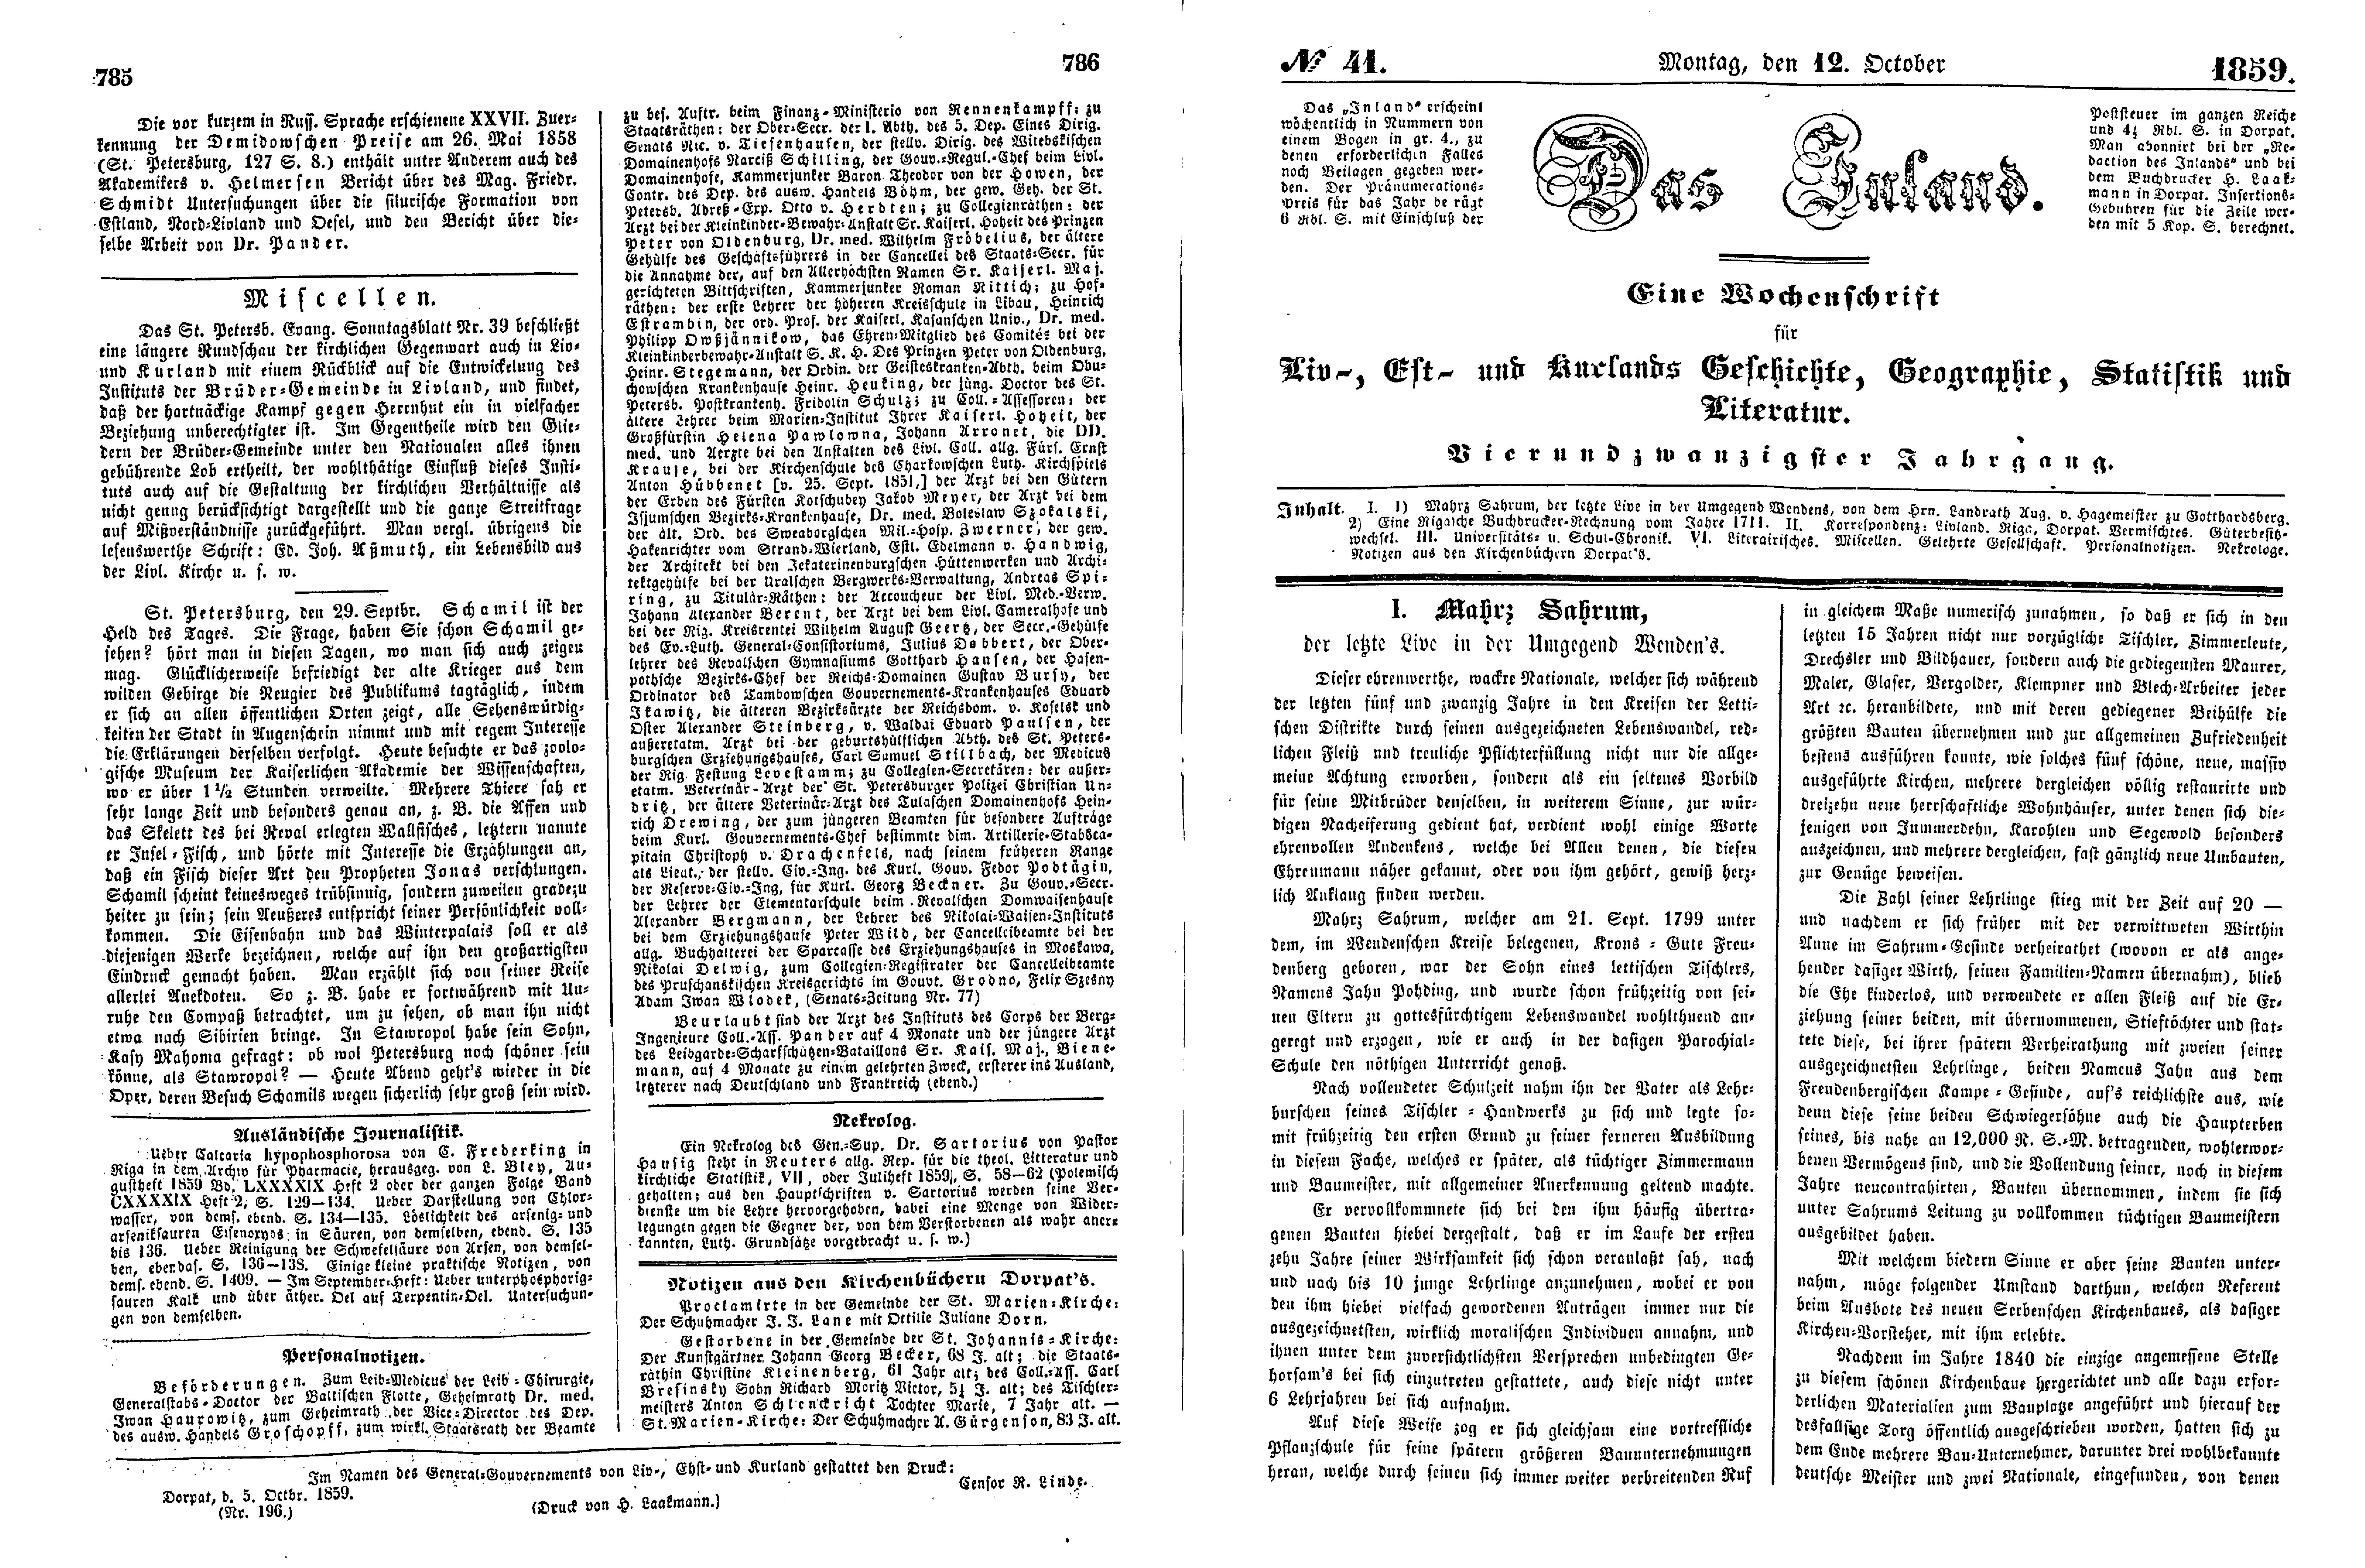 Mahrs Sahrum, der letzte Live in der Umgegend Wenden's (1859) | 1. (785-788) Haupttext